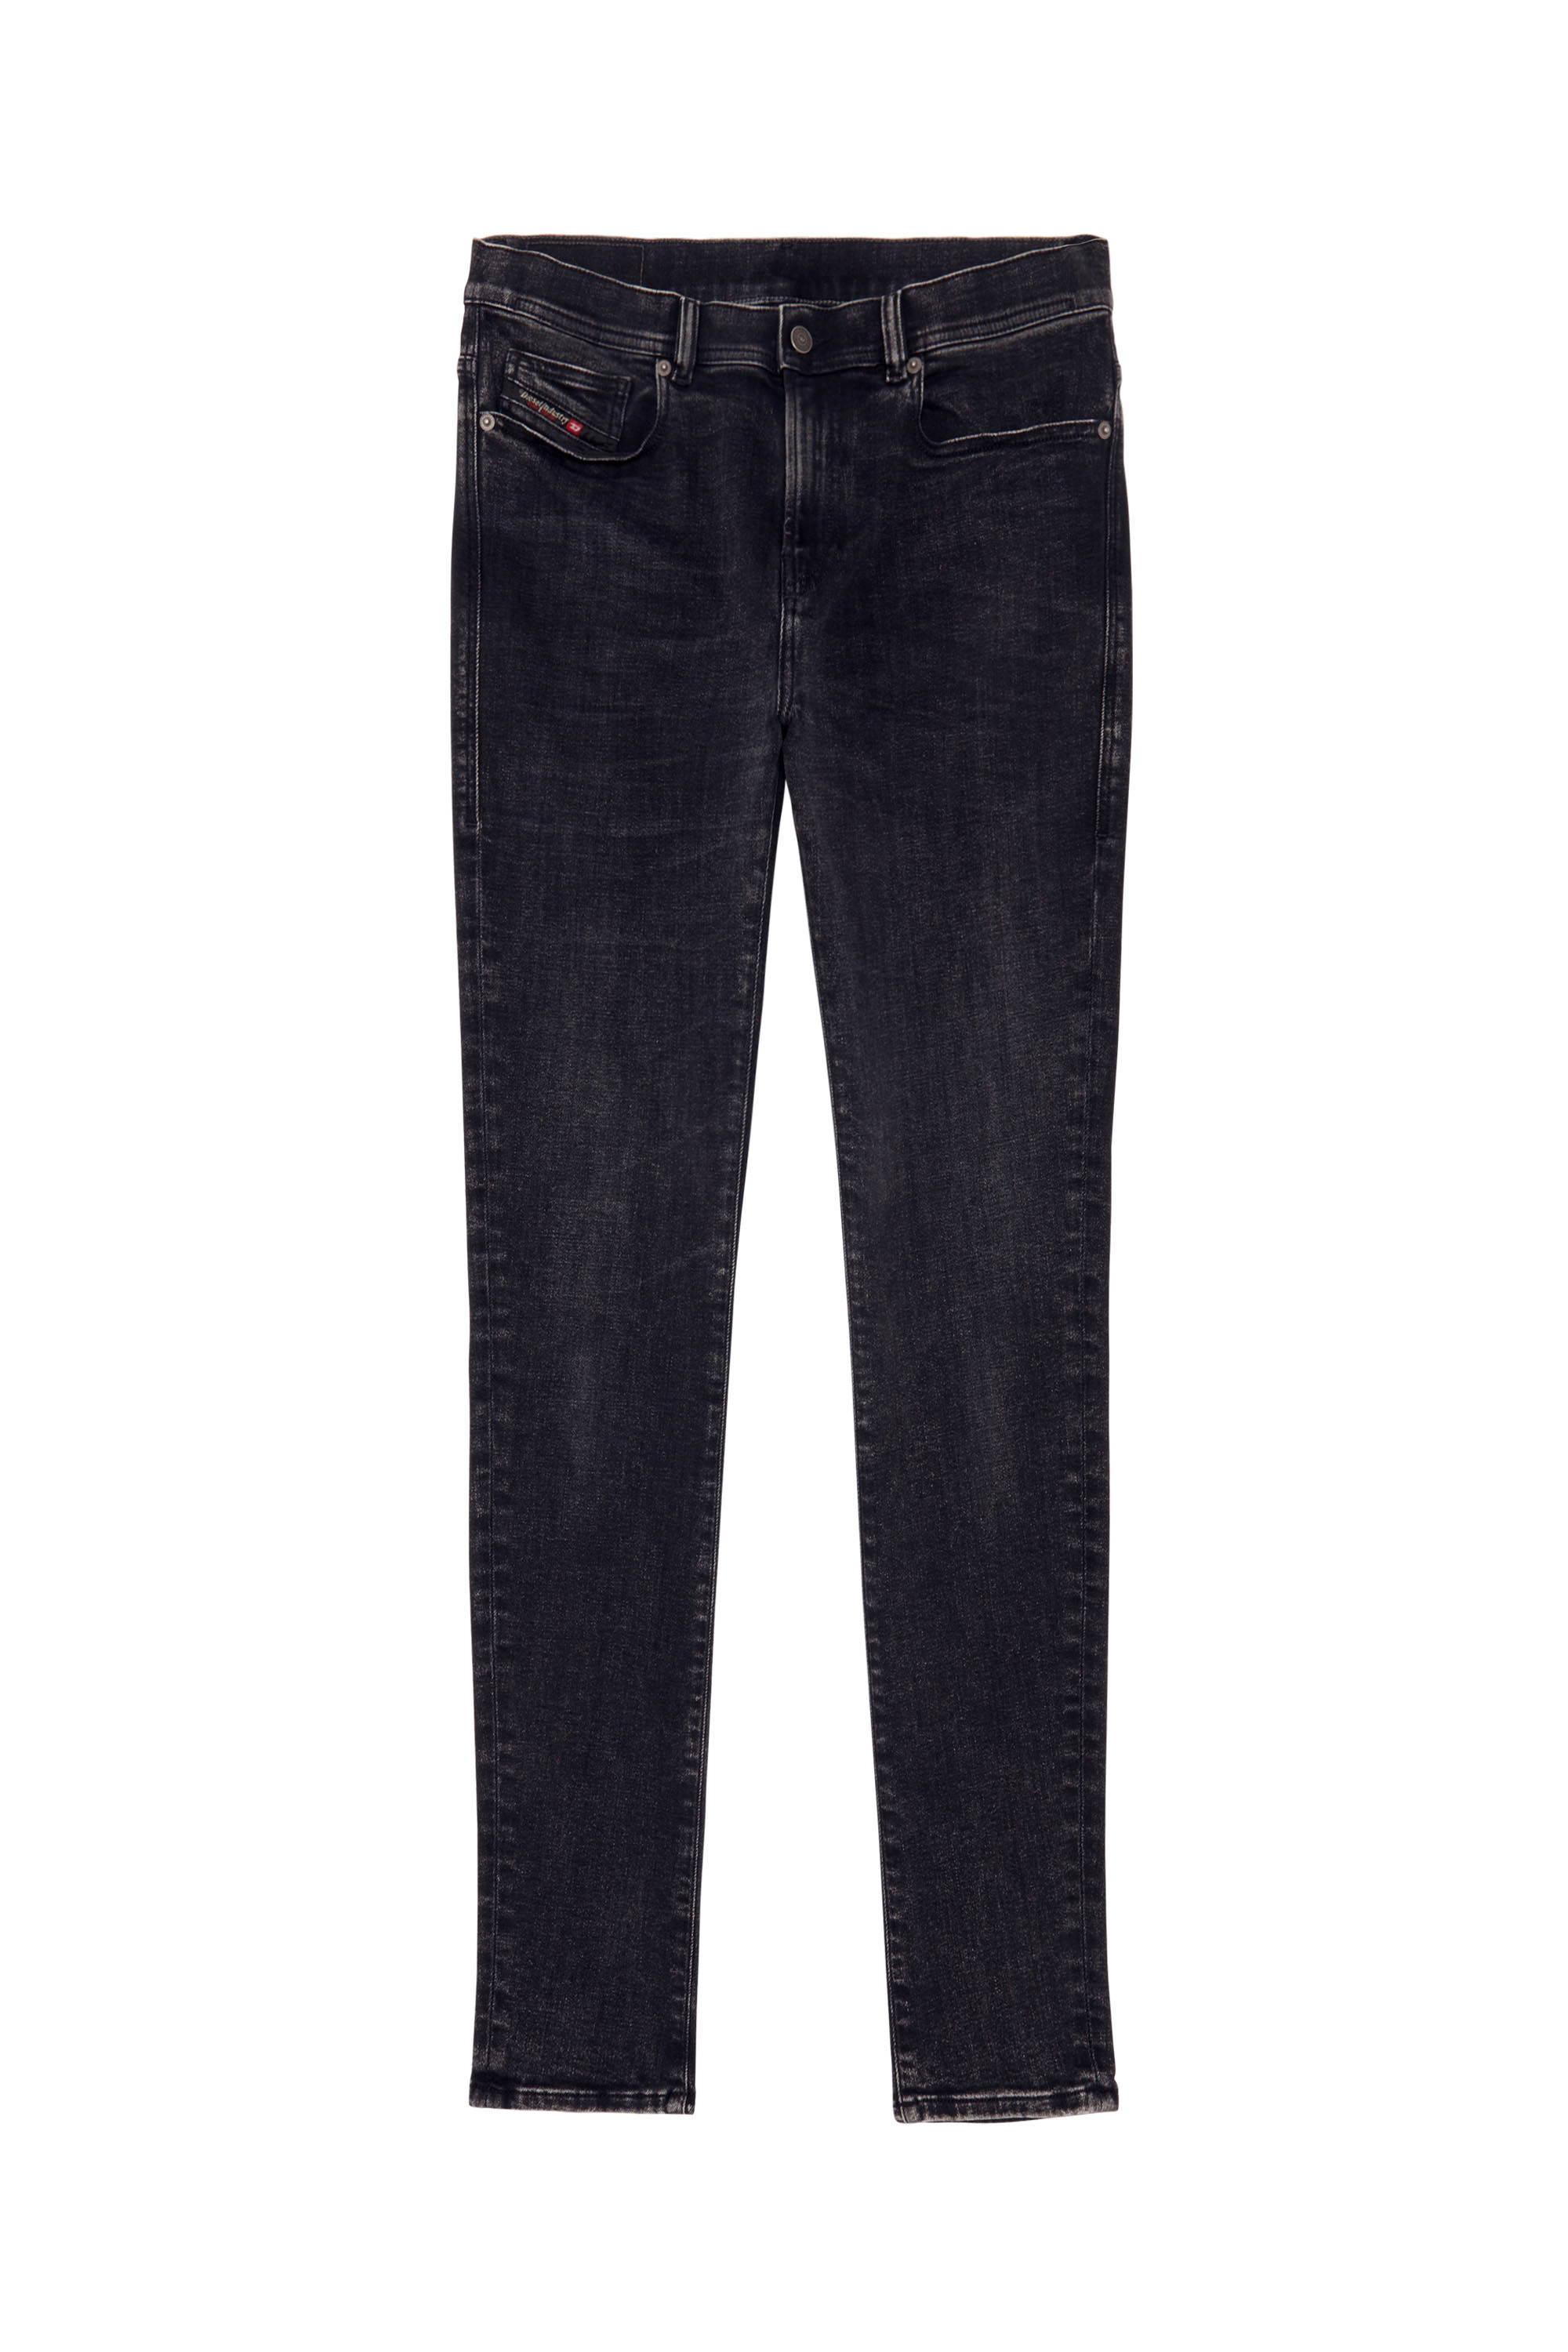 1983 09C23 Skinny Jeans, Black/Dark grey - Jeans